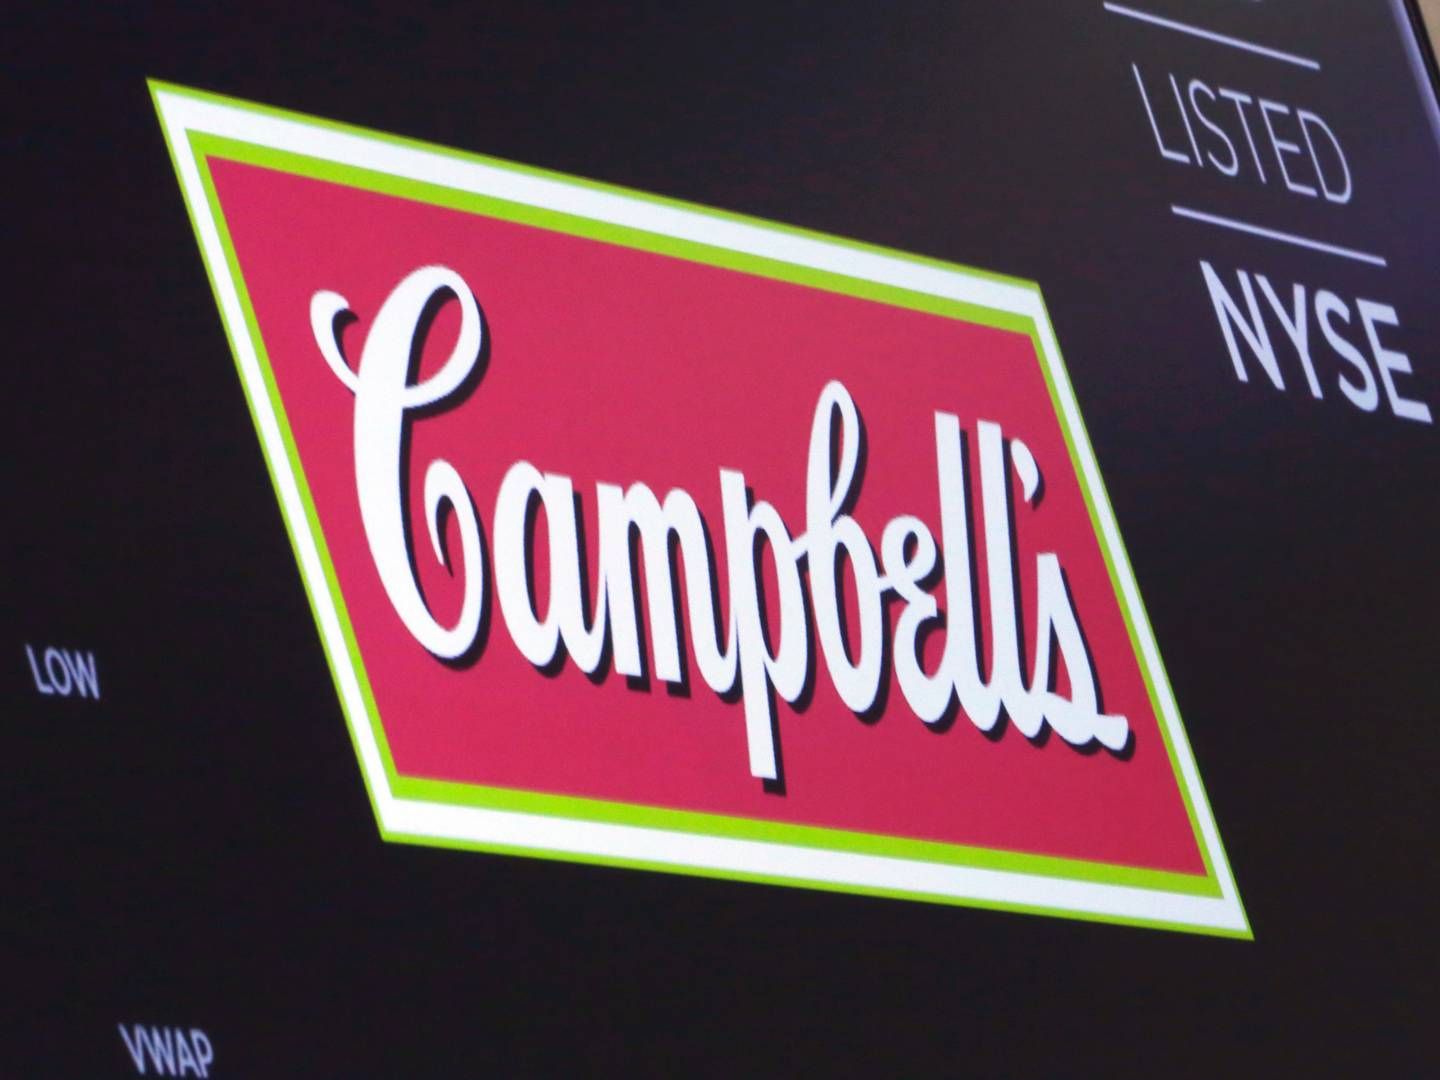 Opkøbet er det største af sin slags for Campbell siden 2017. | Foto: Richard Drew/AP/Ritzau Scanpix